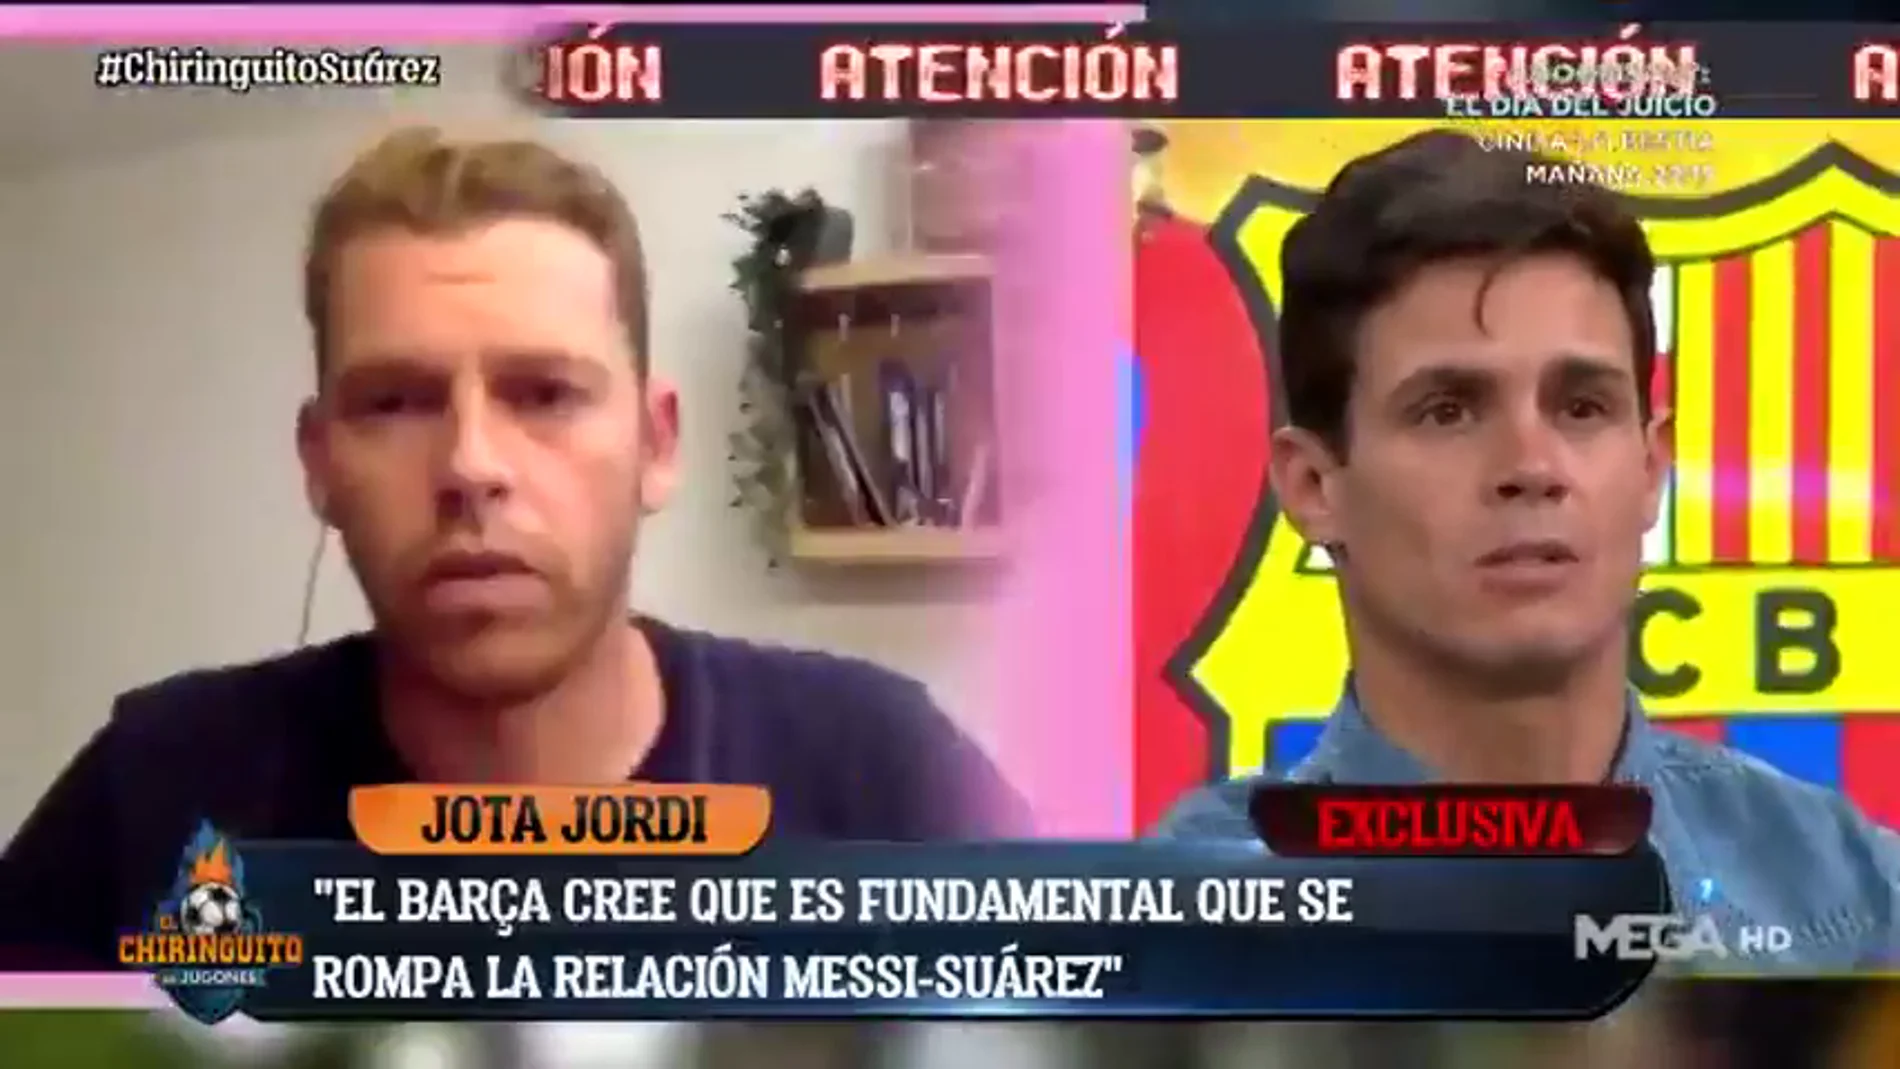 Exclusiva de Jota Jordi: "El Barça cree que es básico romper la relación Messi-Suárez"